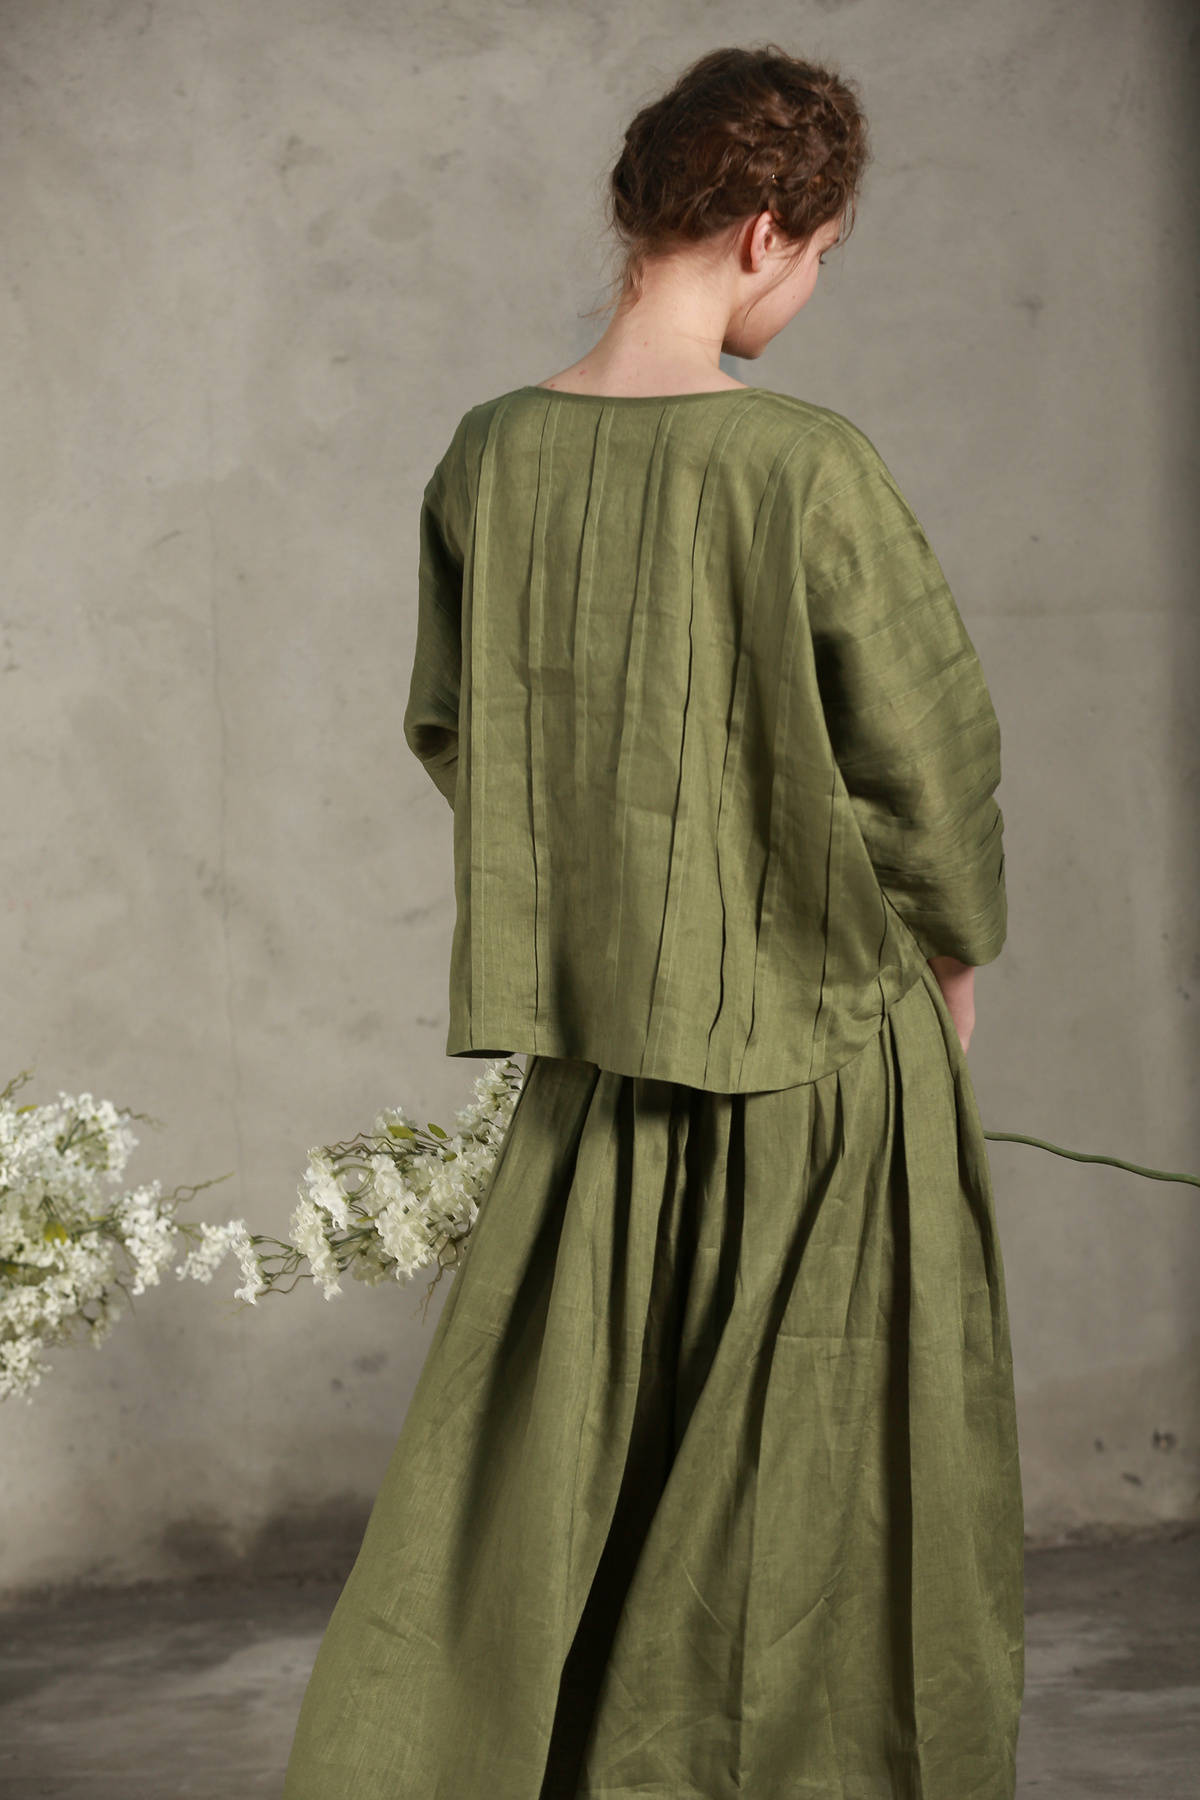 Pintuck linen blouse shirt tunic top moss green shirt | Etsy